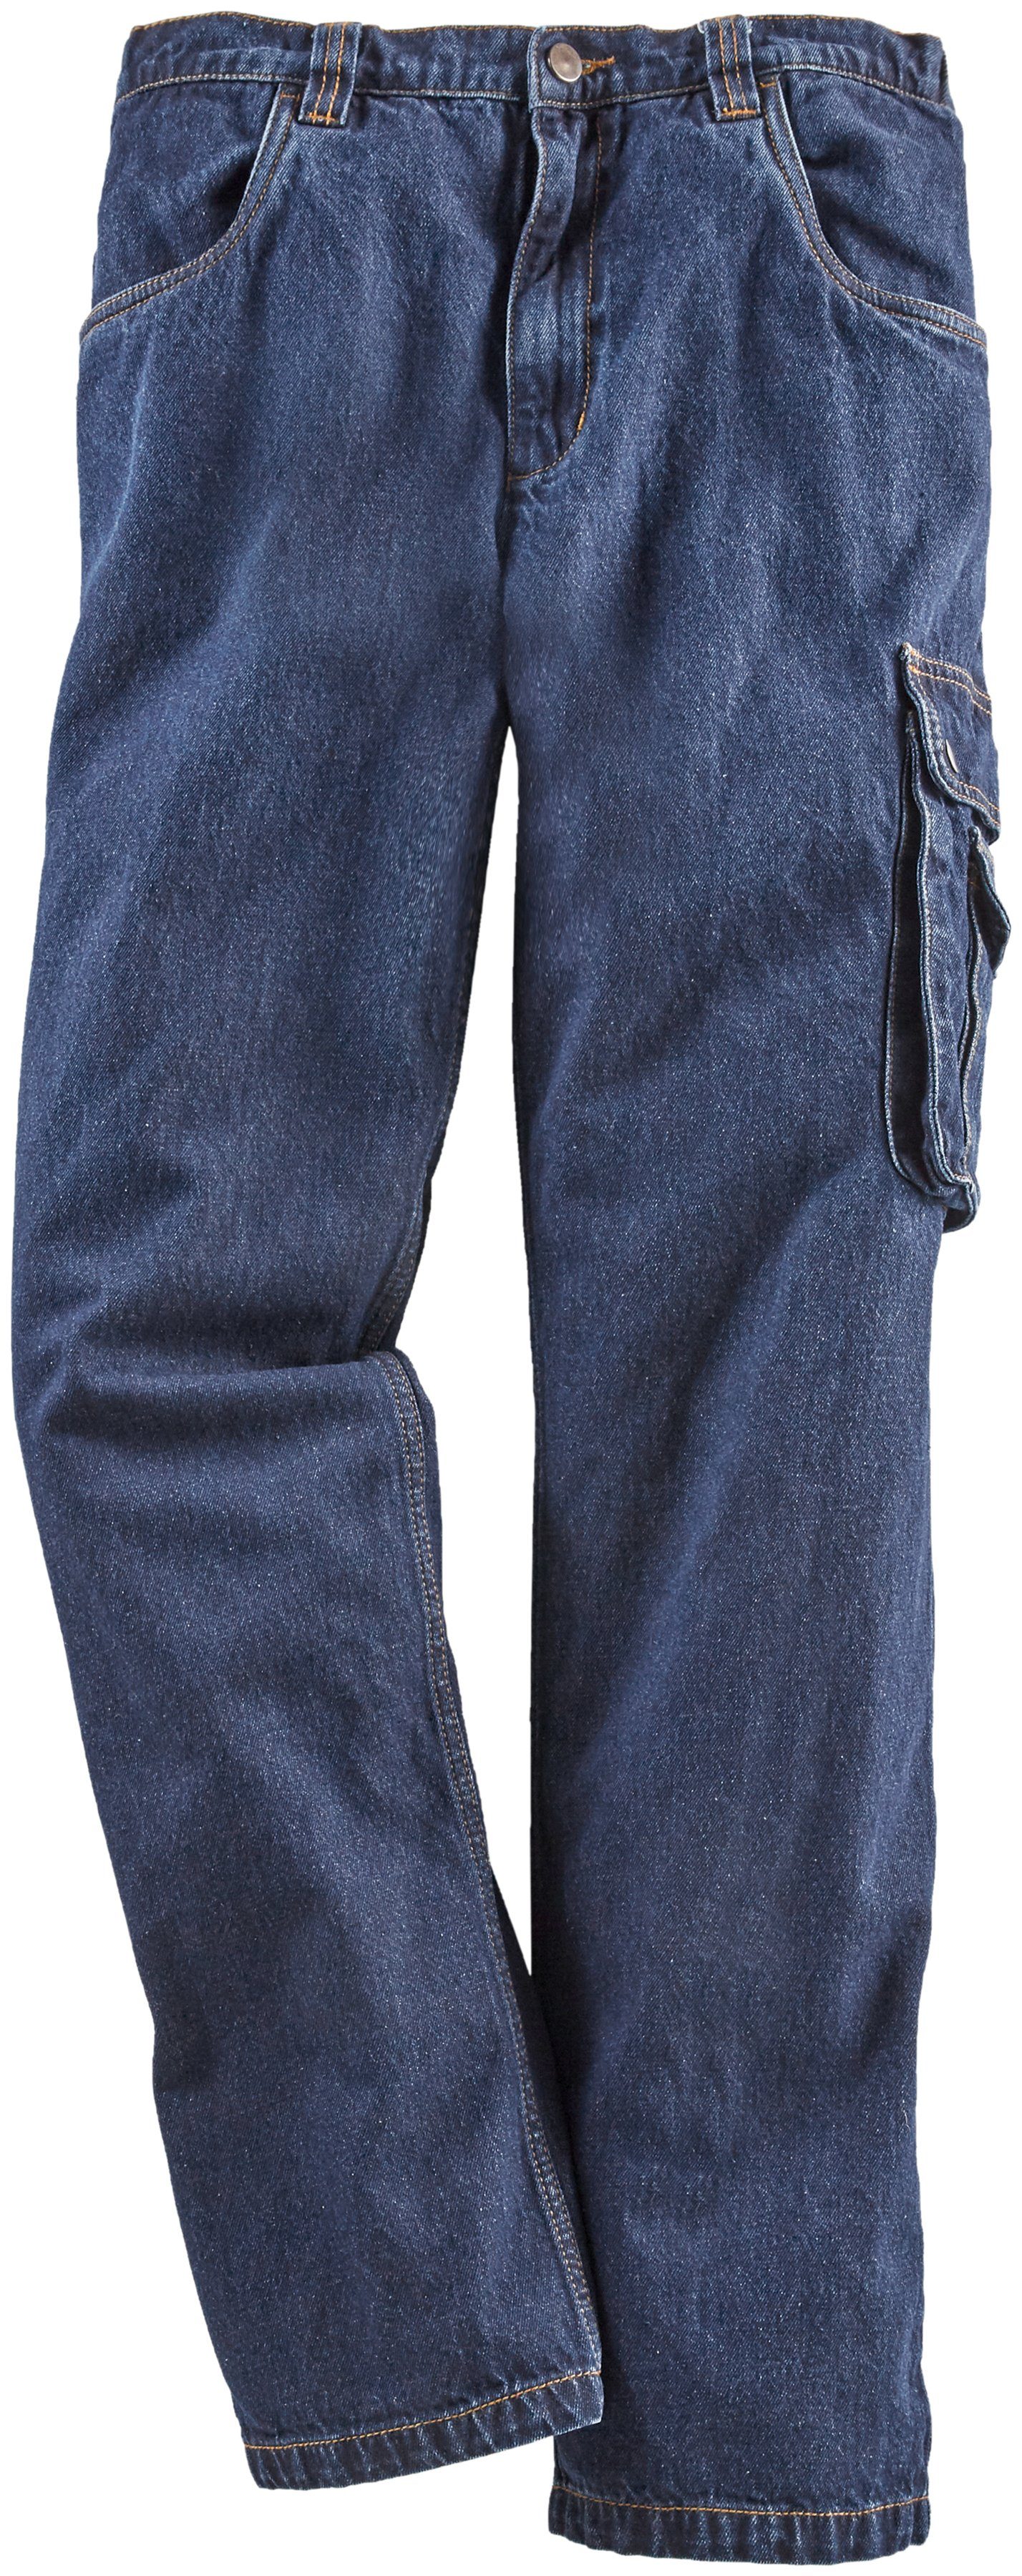 Northern Country Arbeitshose »Jeans Worker« mit dehnbarem Bund, robuste  Jeanshose aus 100% Baumwolle, mit 8 praktischen Taschen, komfortable  Passform online kaufen | OTTO